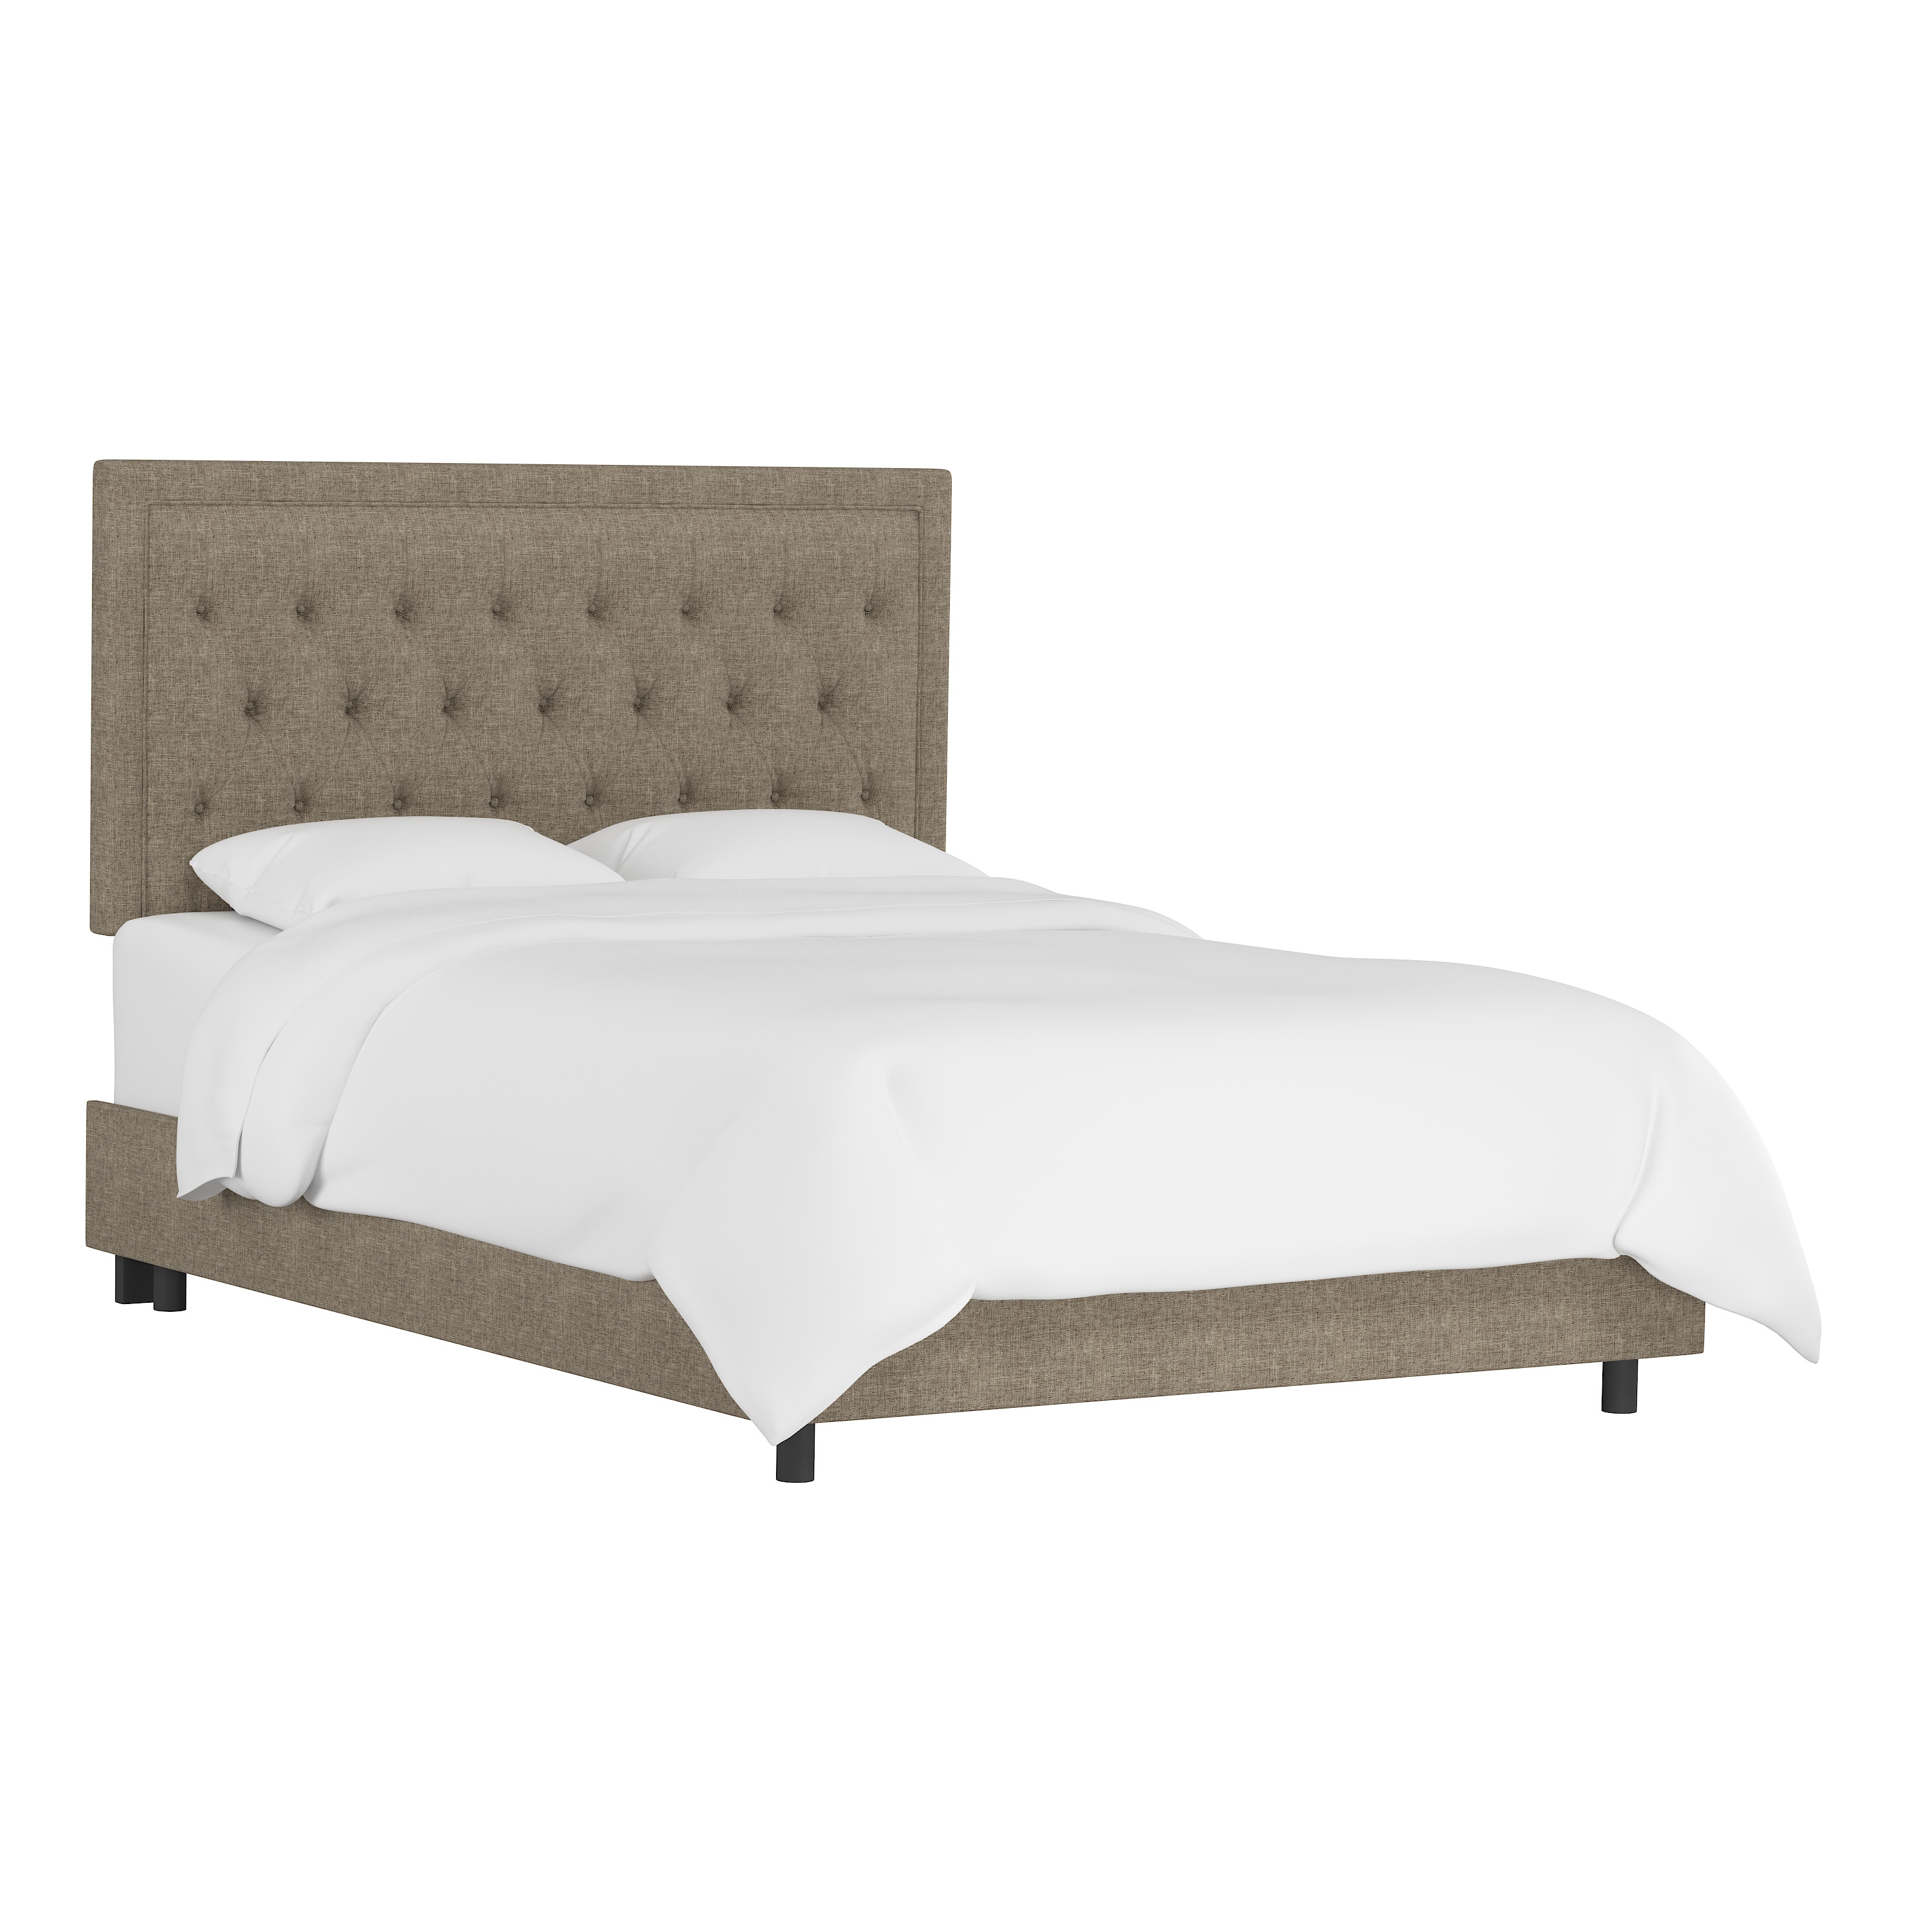 Lafayette Bed, Queen, Linen - Image 0